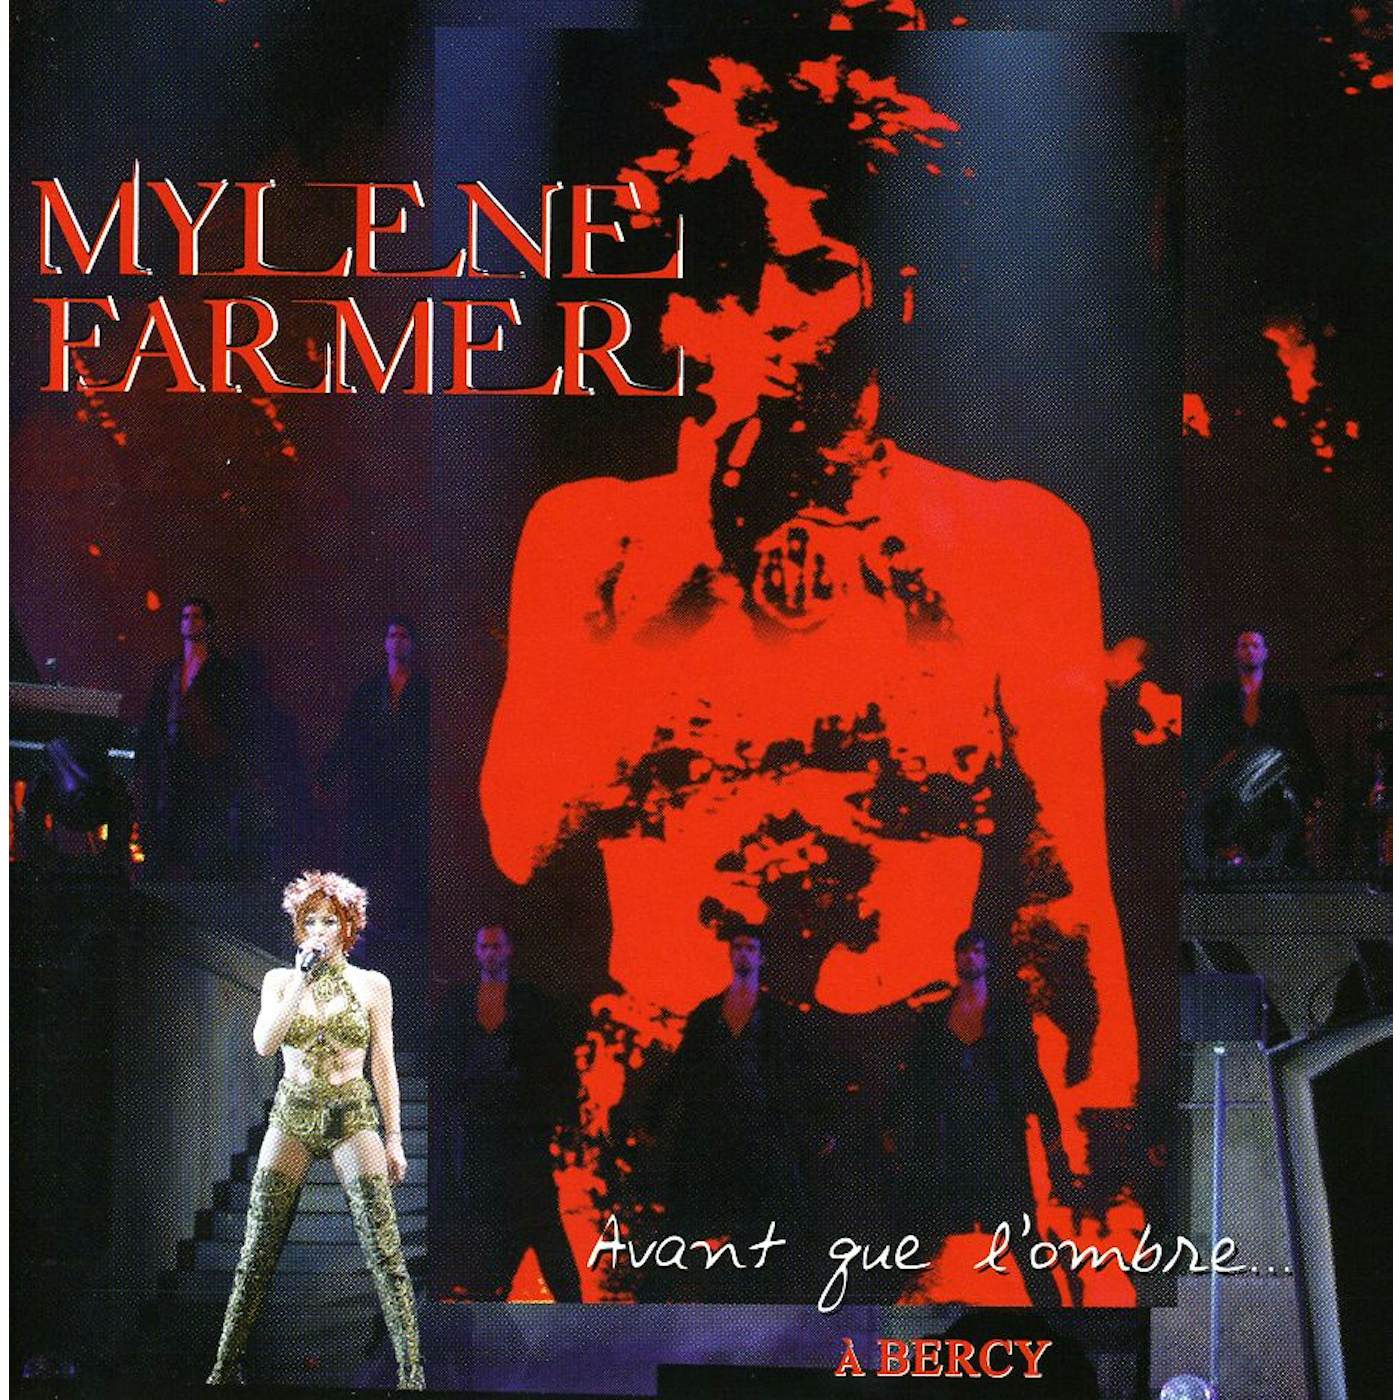 Mylène Farmer AVANT QUE L'OMBRE A BERCY CD